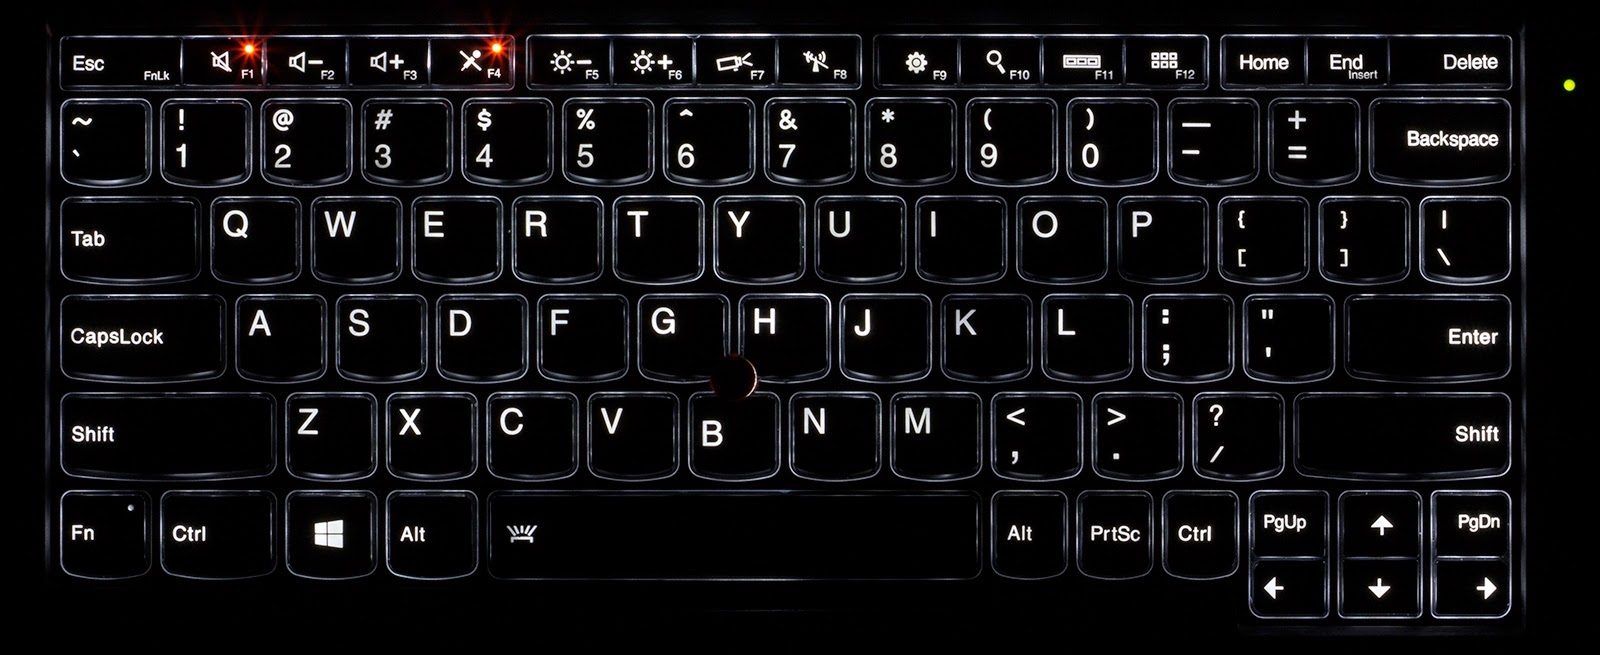 Комбинация для подсветки клавиатуры